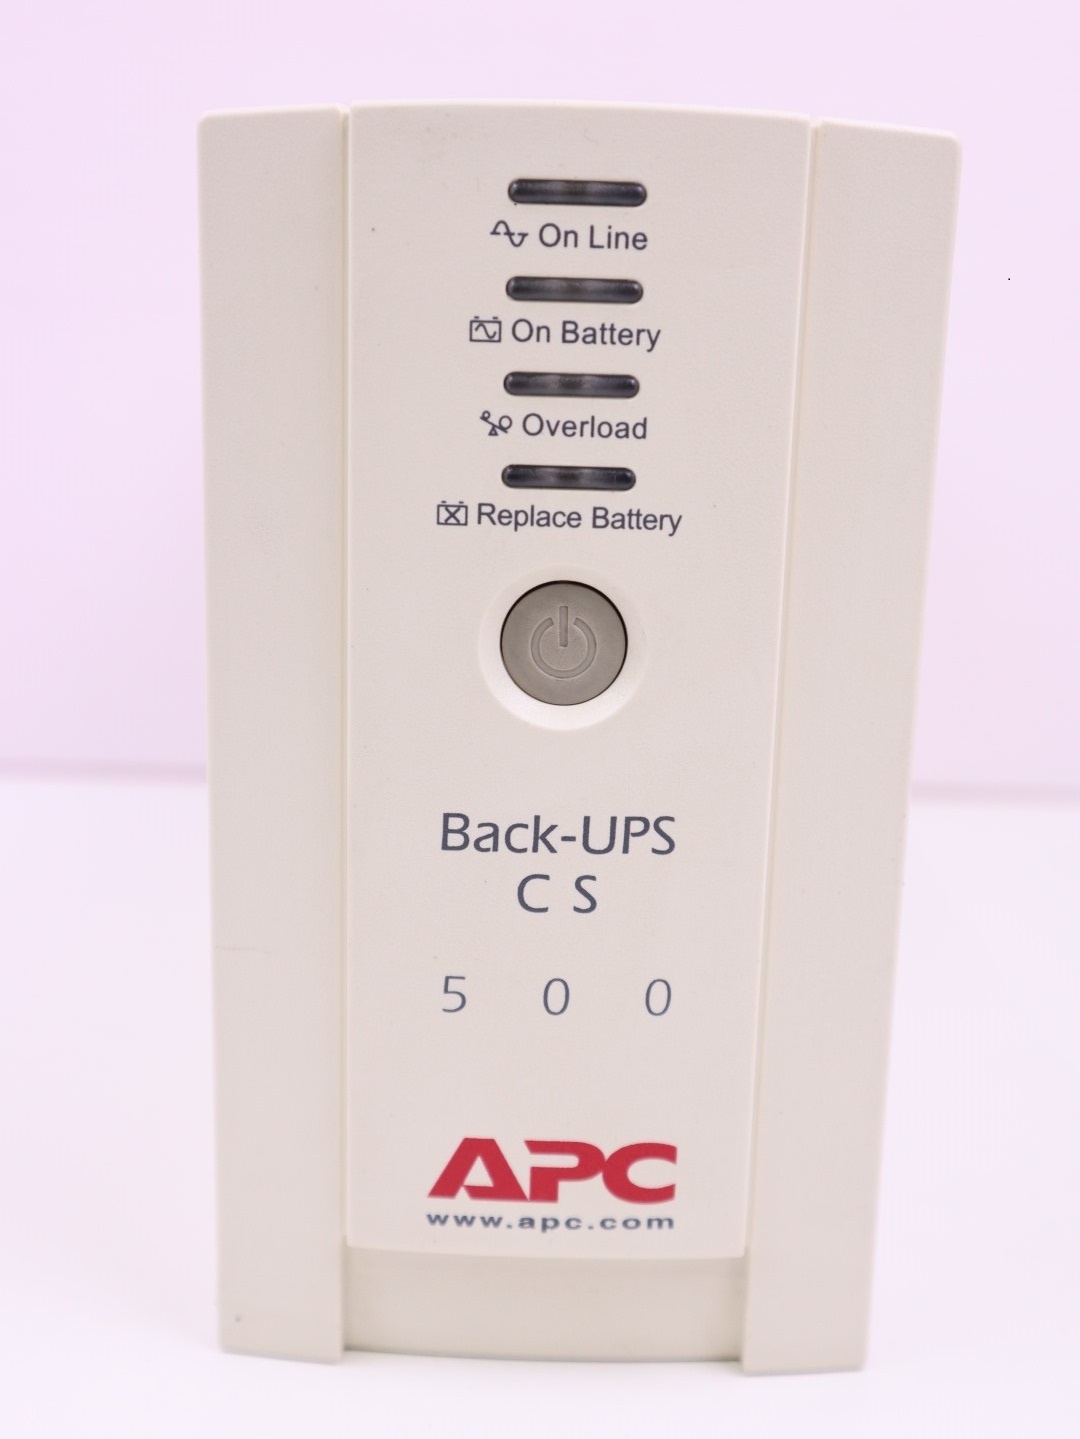 UPS เครื่องสำรองไฟ APC Back-UPS CS 500VA/300W เครื่องมีแบตพร้อมใช้งาน